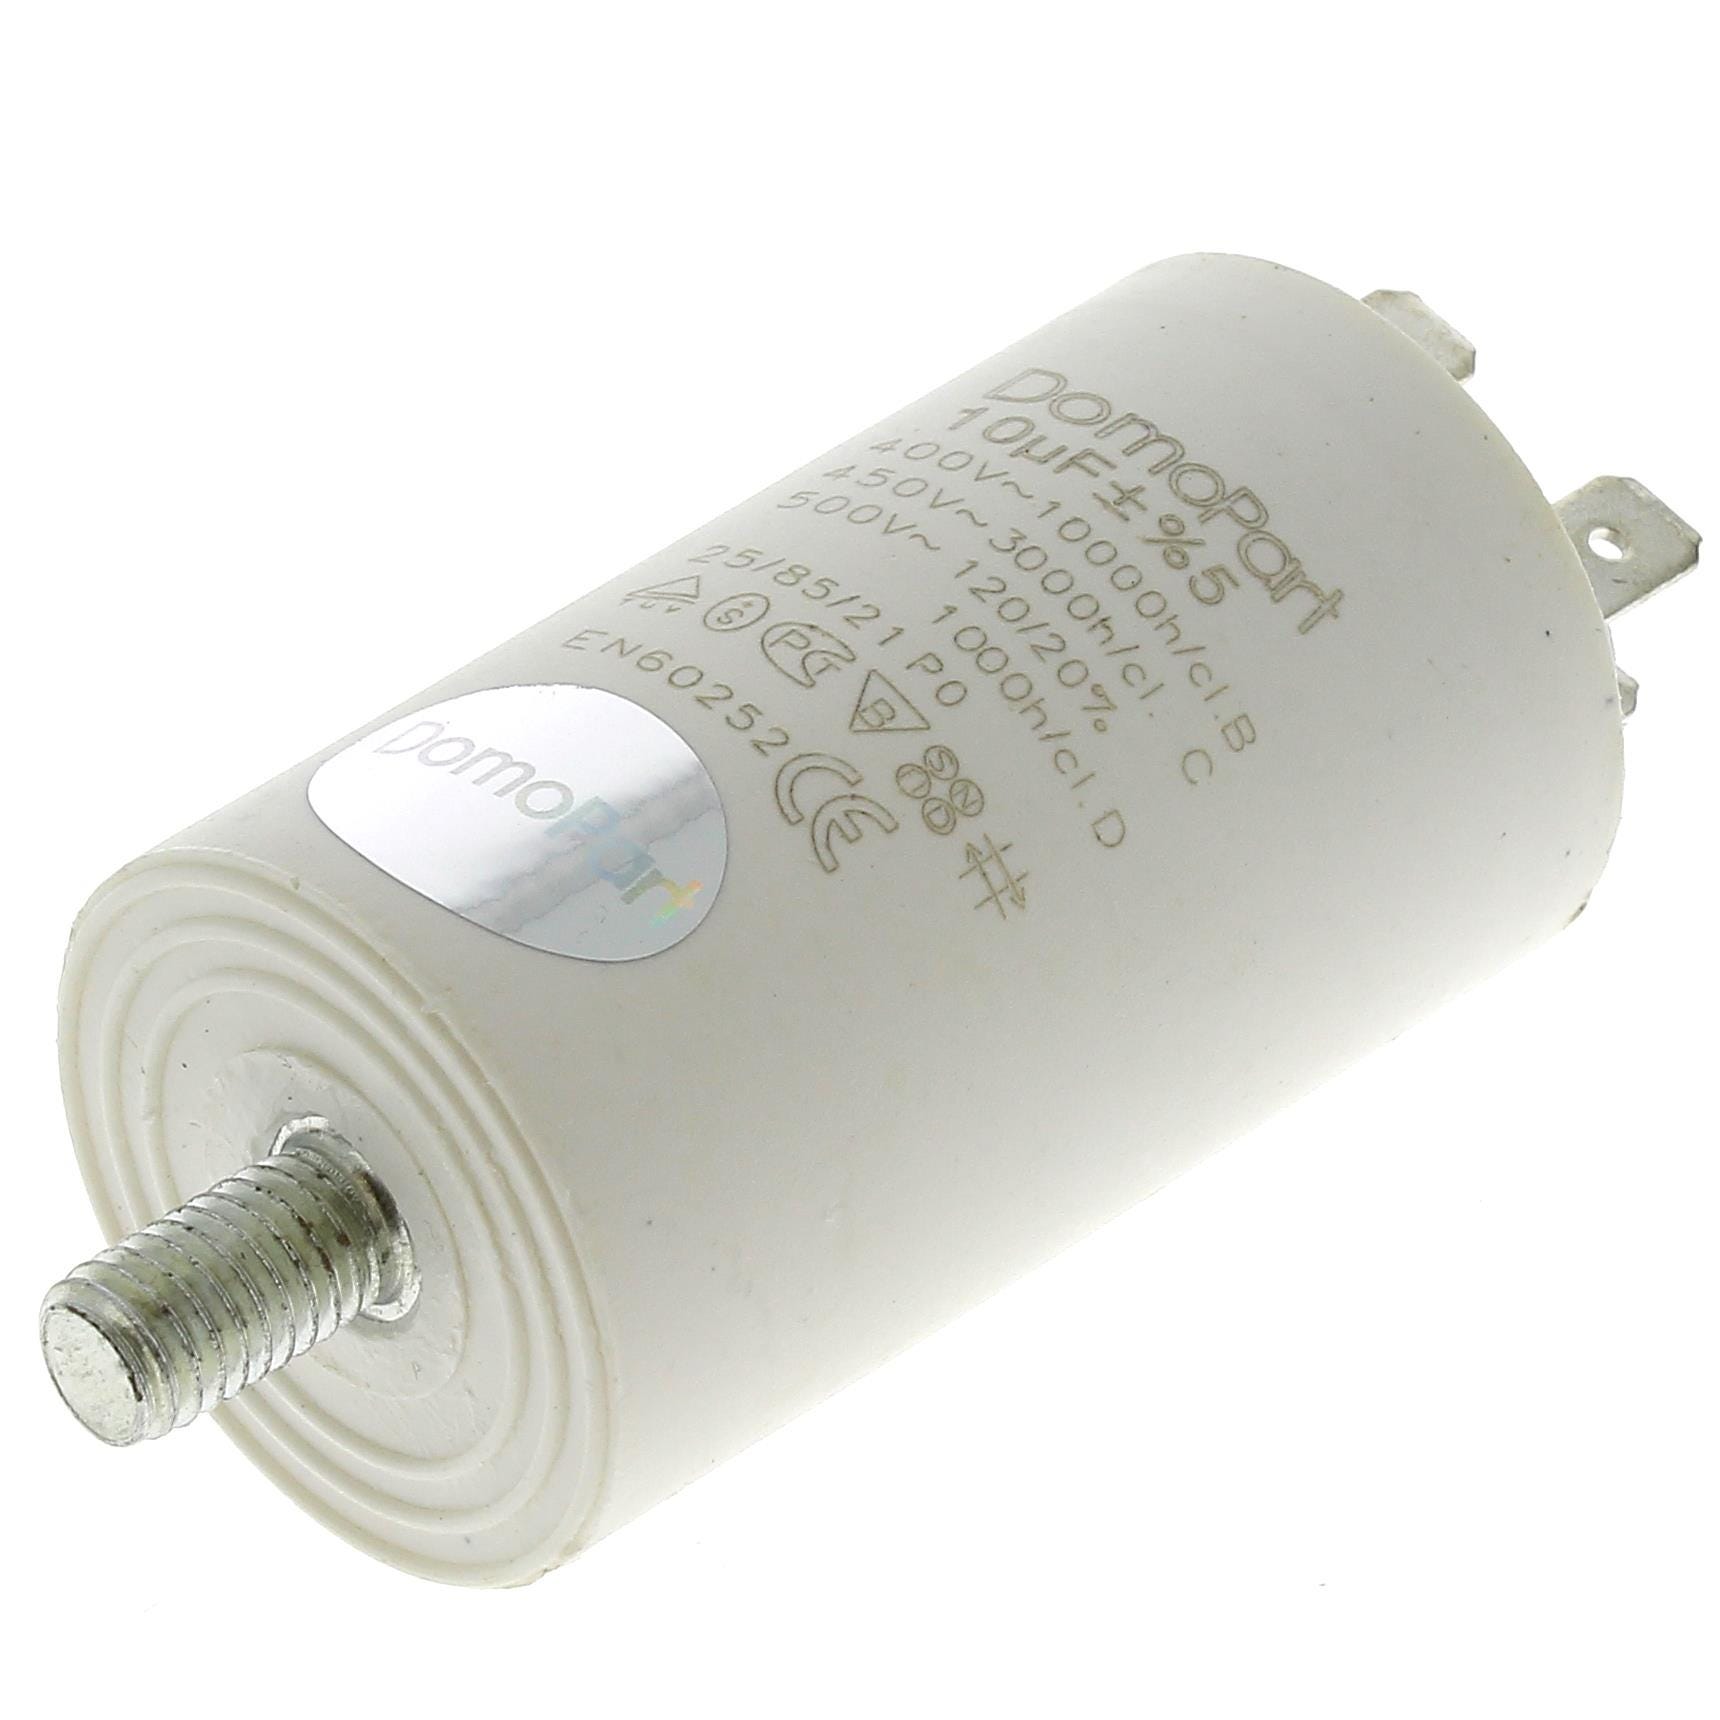 Condensateur 9µf 400v pour seche-linge electrolux